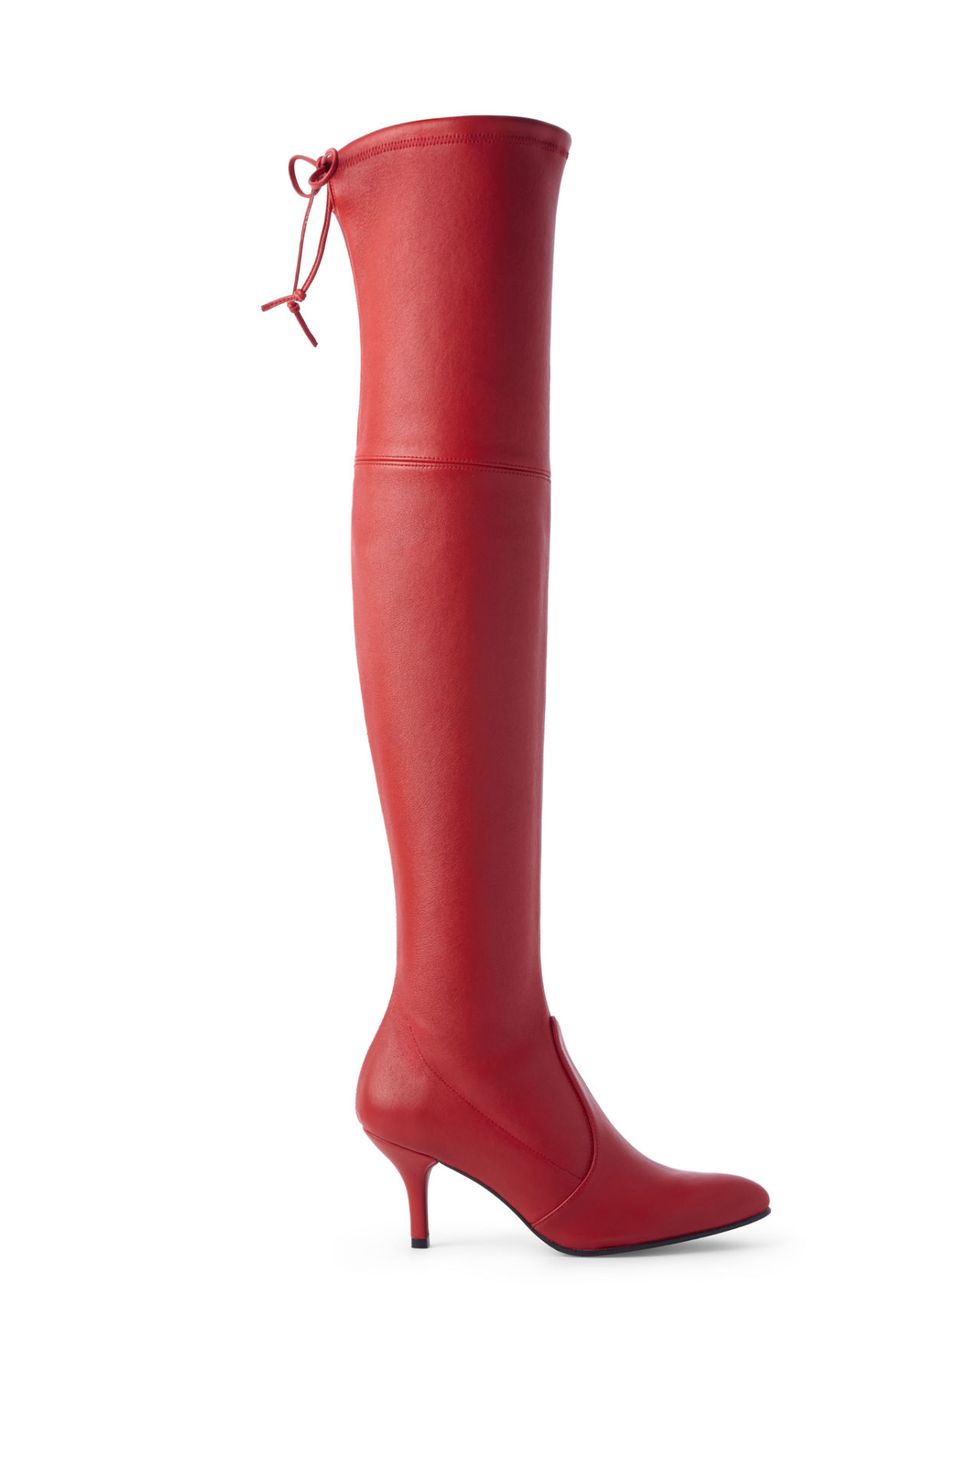 Gli stivali alti rossi sono il tuo prossimo paio di stivali sopra il ginocchio del desiderio: avvistati sulle passerelle delle quattro capitali della moda, sono praticamente irresistibili.